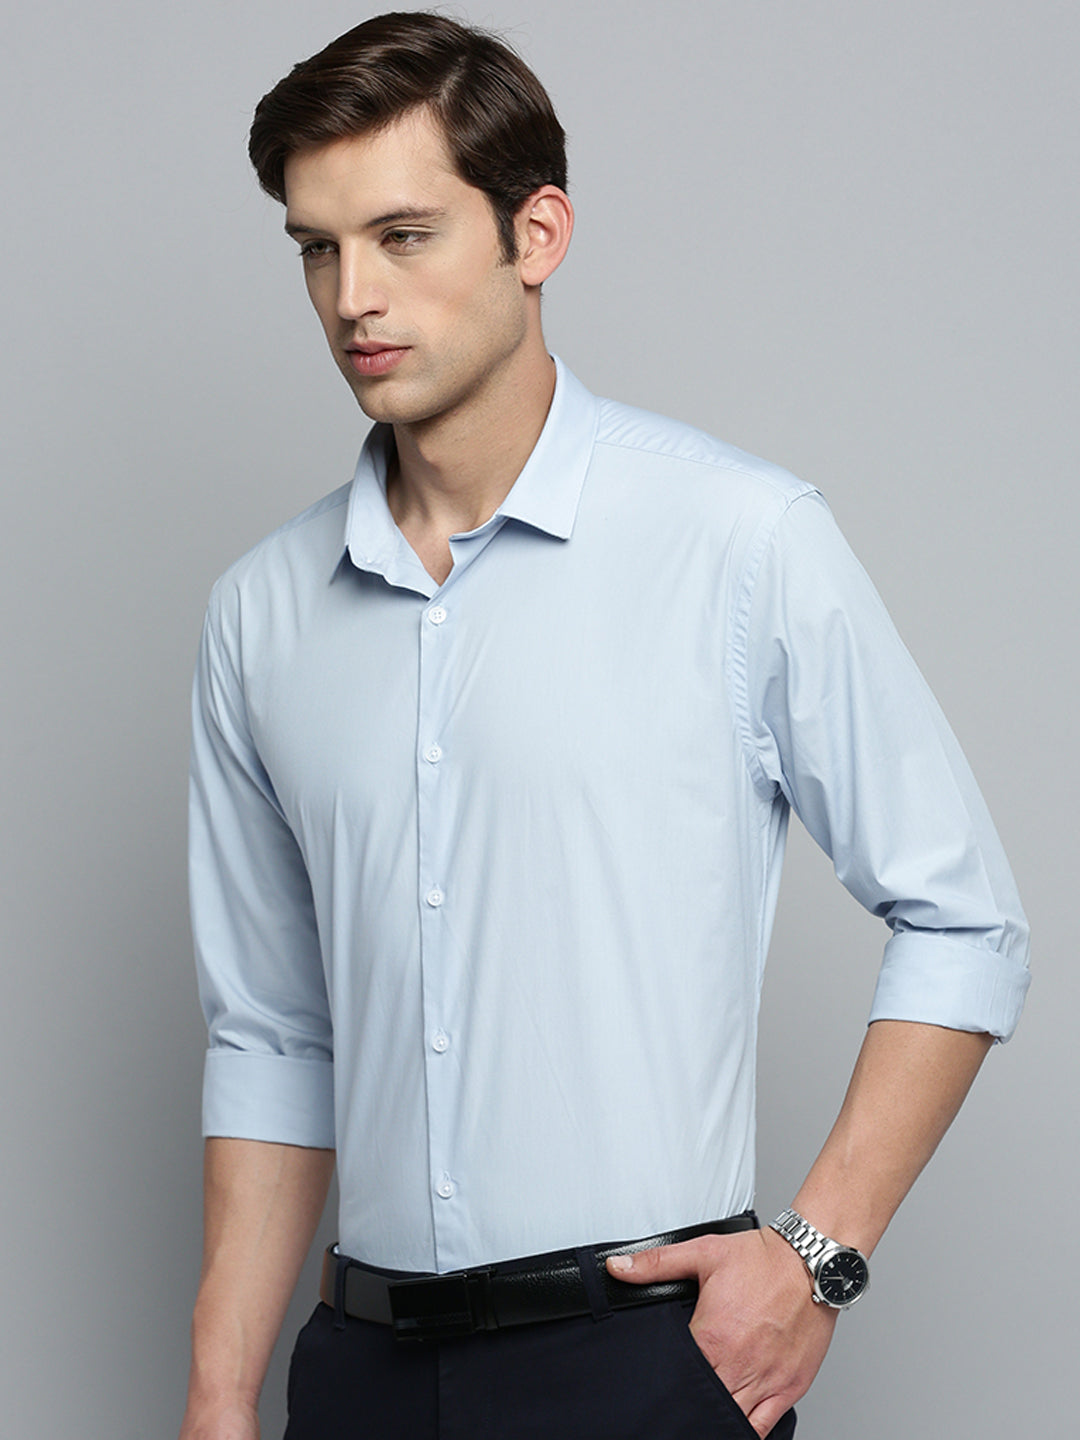 Men Blue Solid Formal Shirt